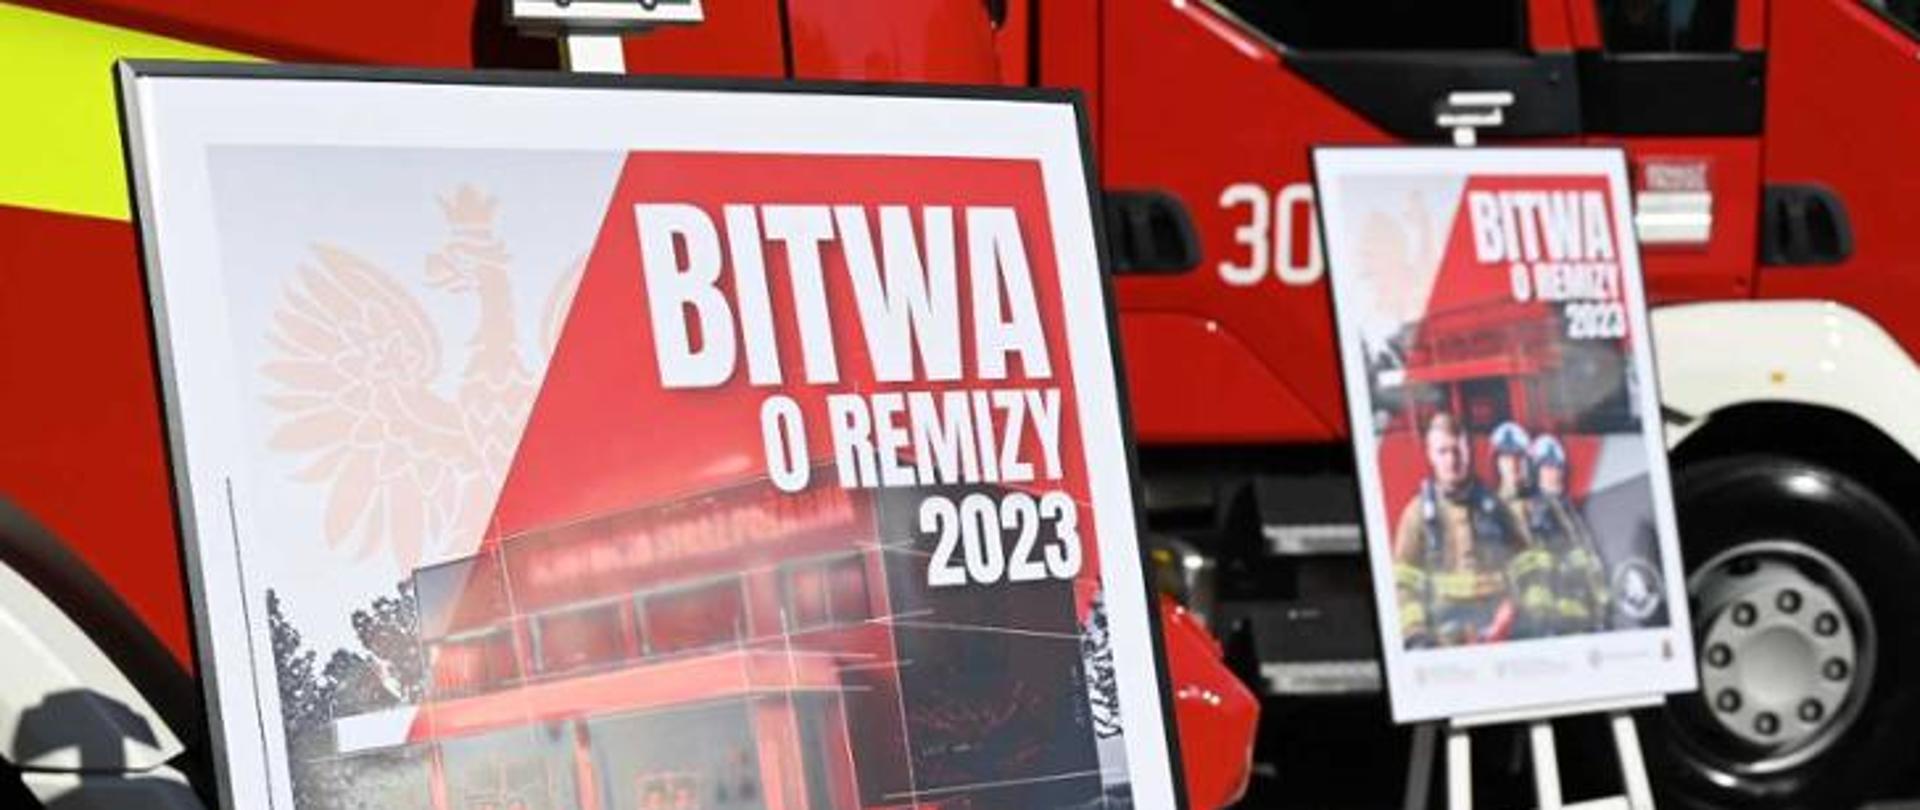 Na zdjęciu widać plakat akcji pod nazwą BITWA O REMIZY 2023. W tle stoją samochody pożarnicze.